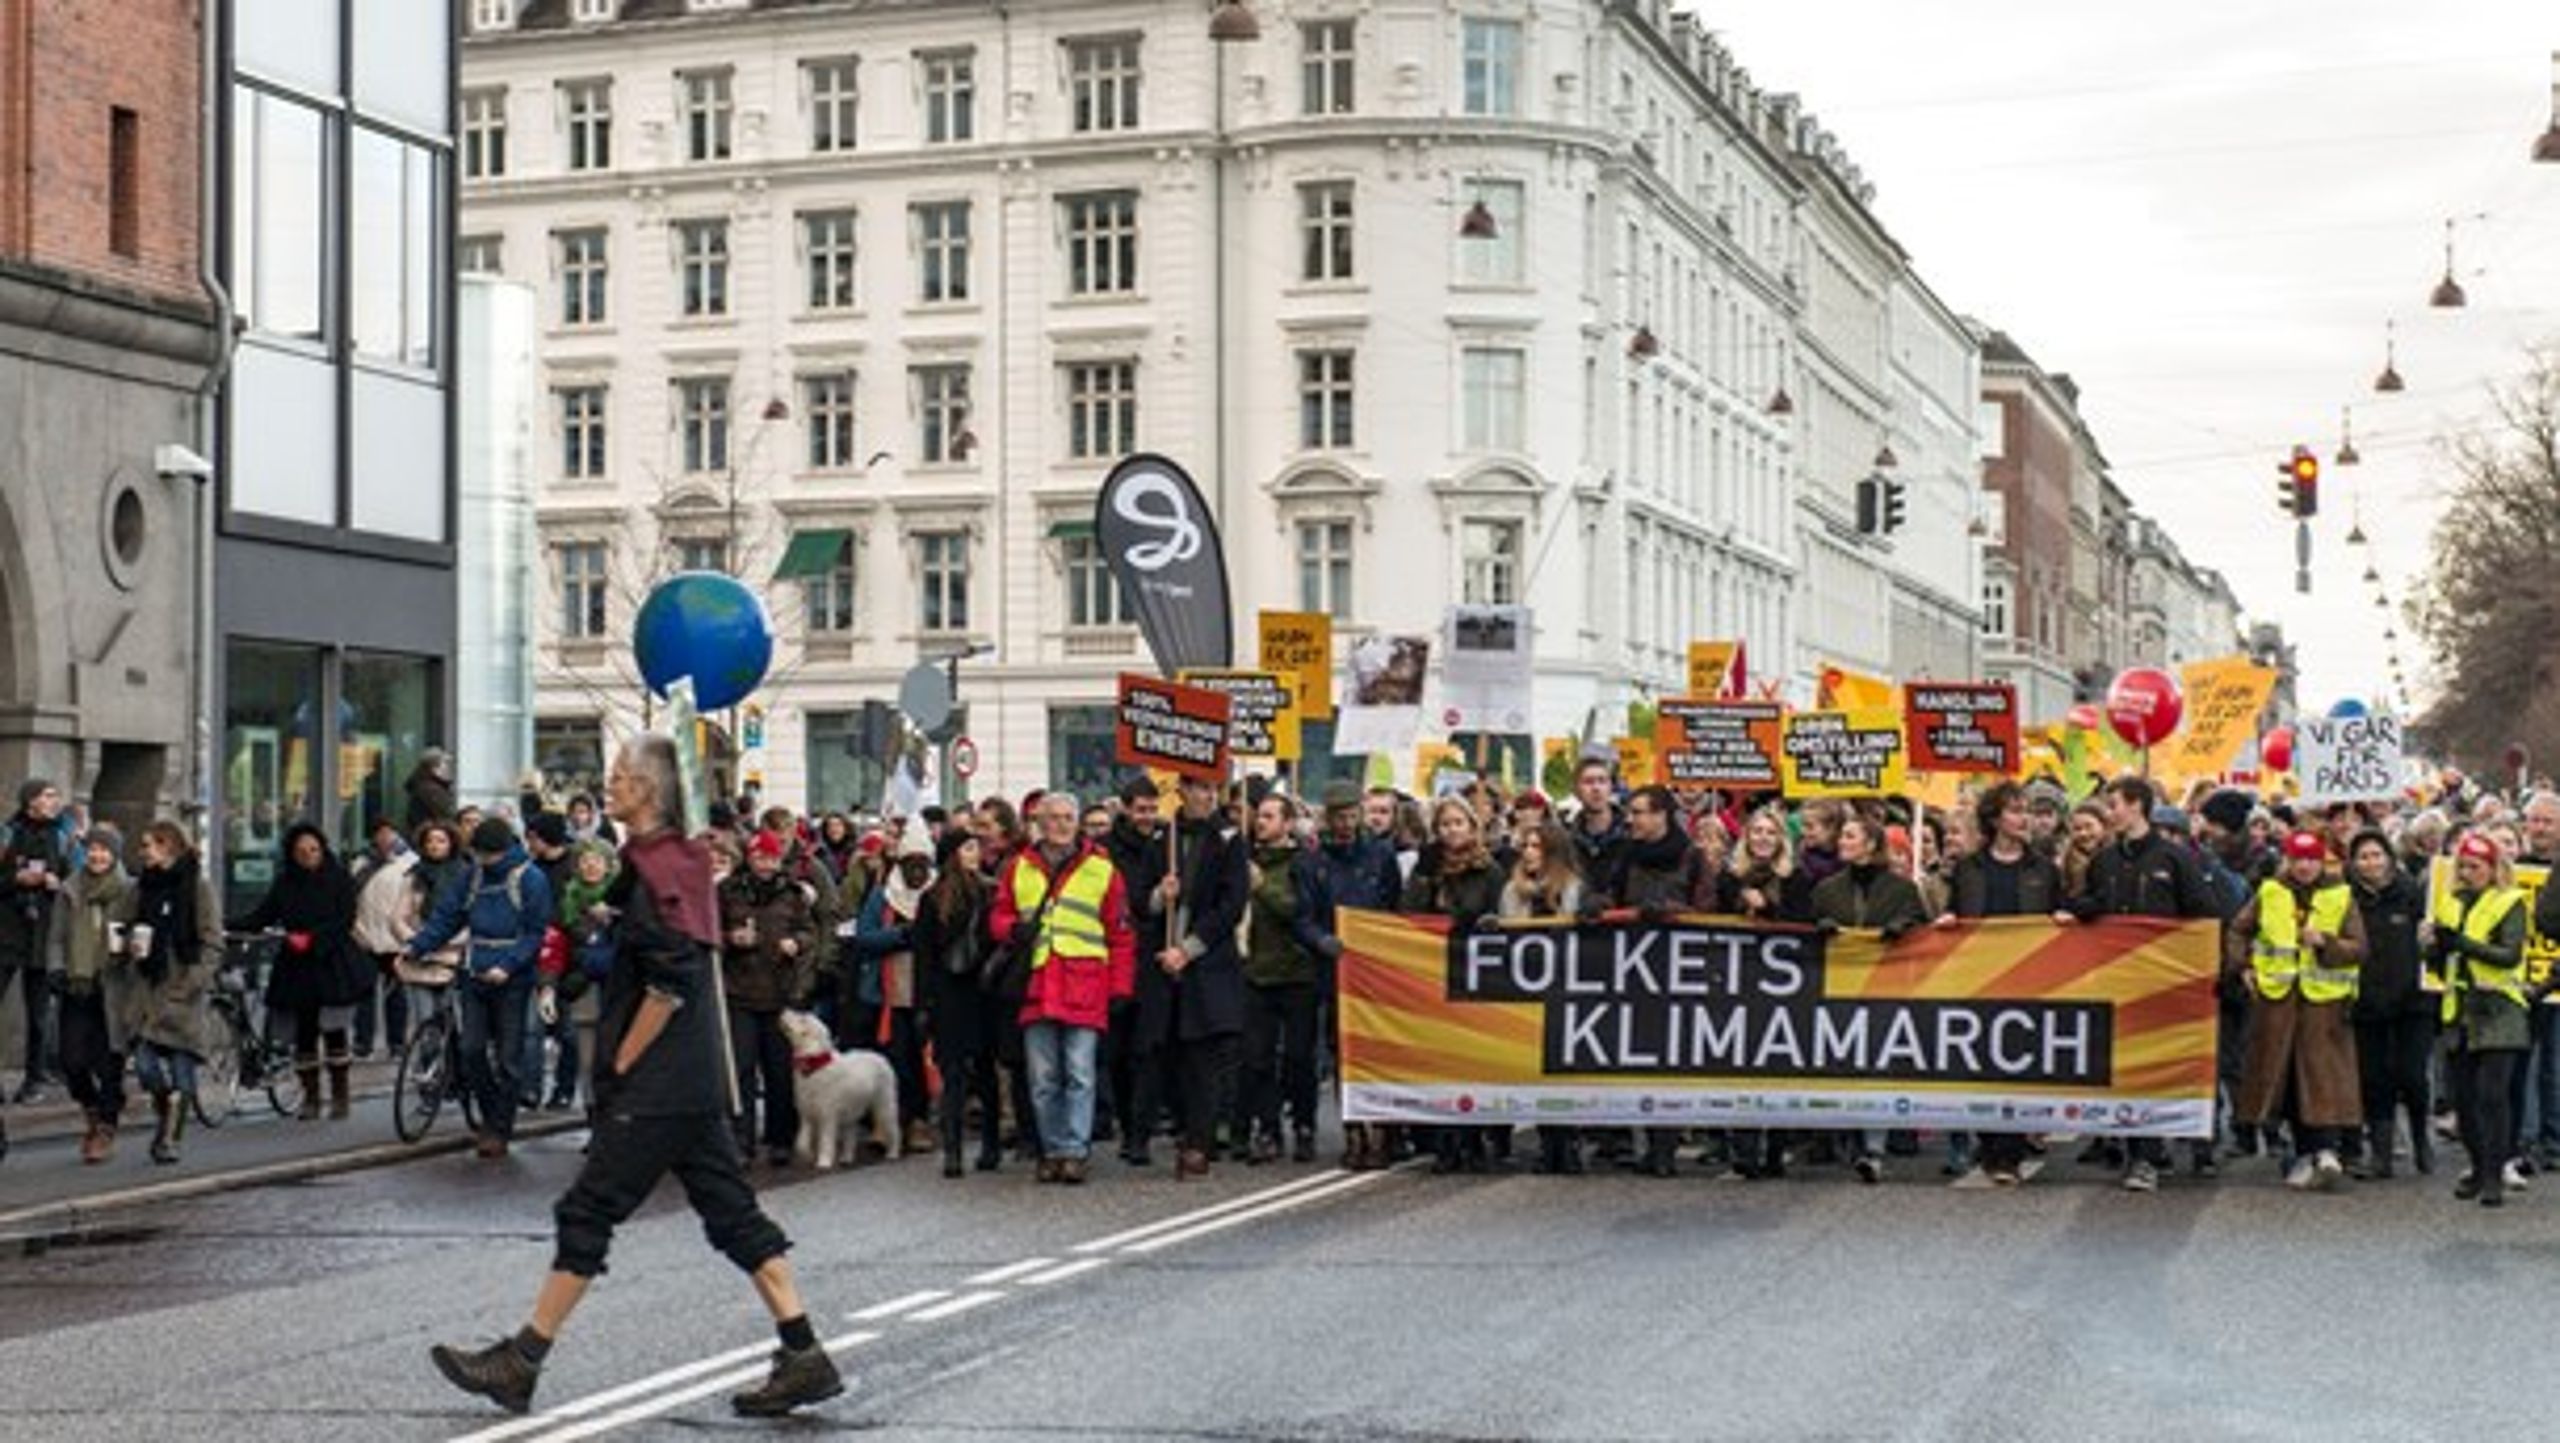 Lørdag er der klimamach i Københavns gader. Her er det fra klimamarchen i 2015 op til klimatopmødet i Paris.